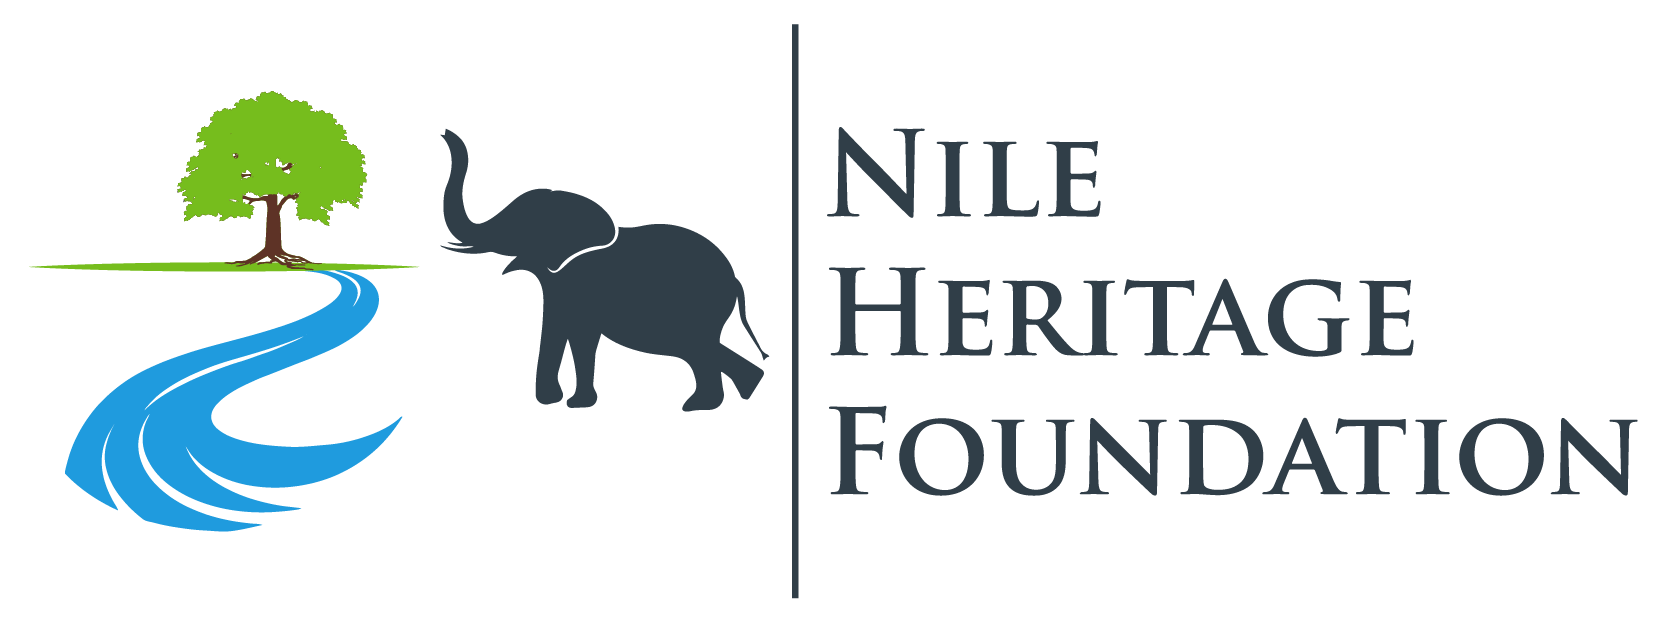 Nile Heritage Foundation